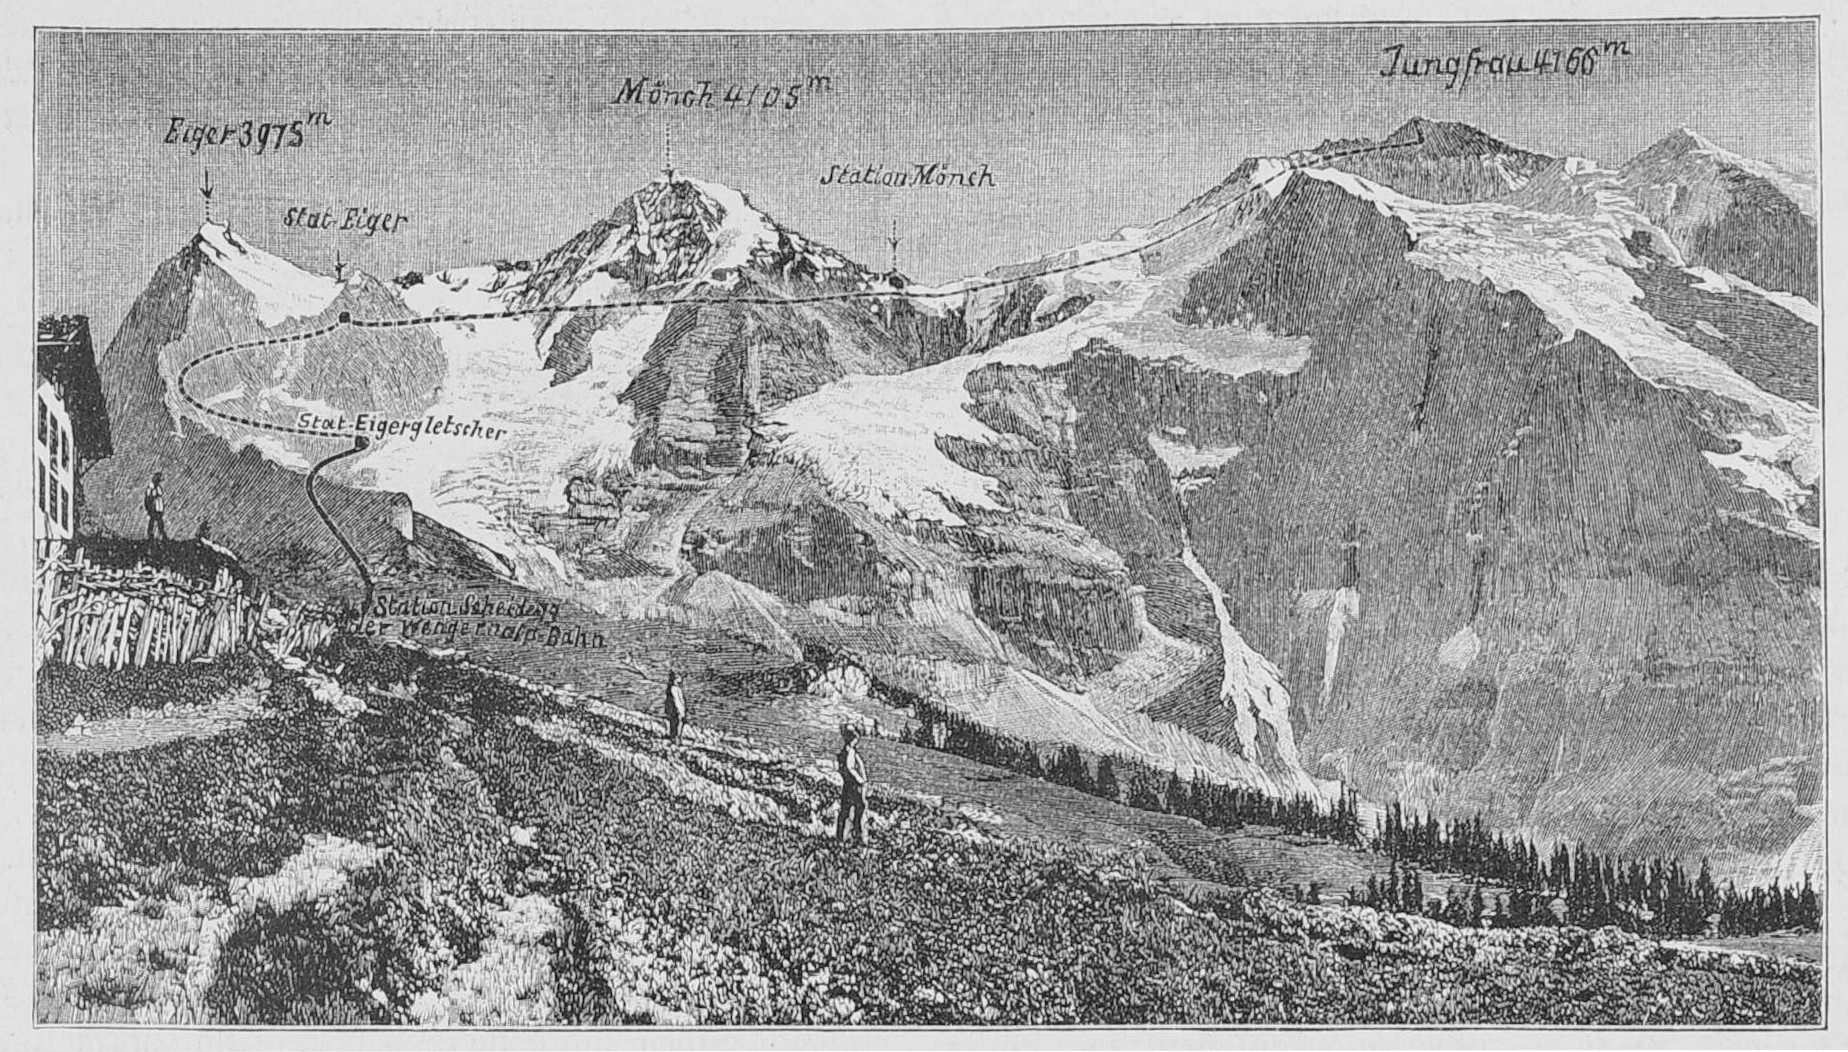 Vergr?sserte Ansicht: Altes schwarz-weiss Bild der Berge, welches das geplante Bauprojekt zeigt